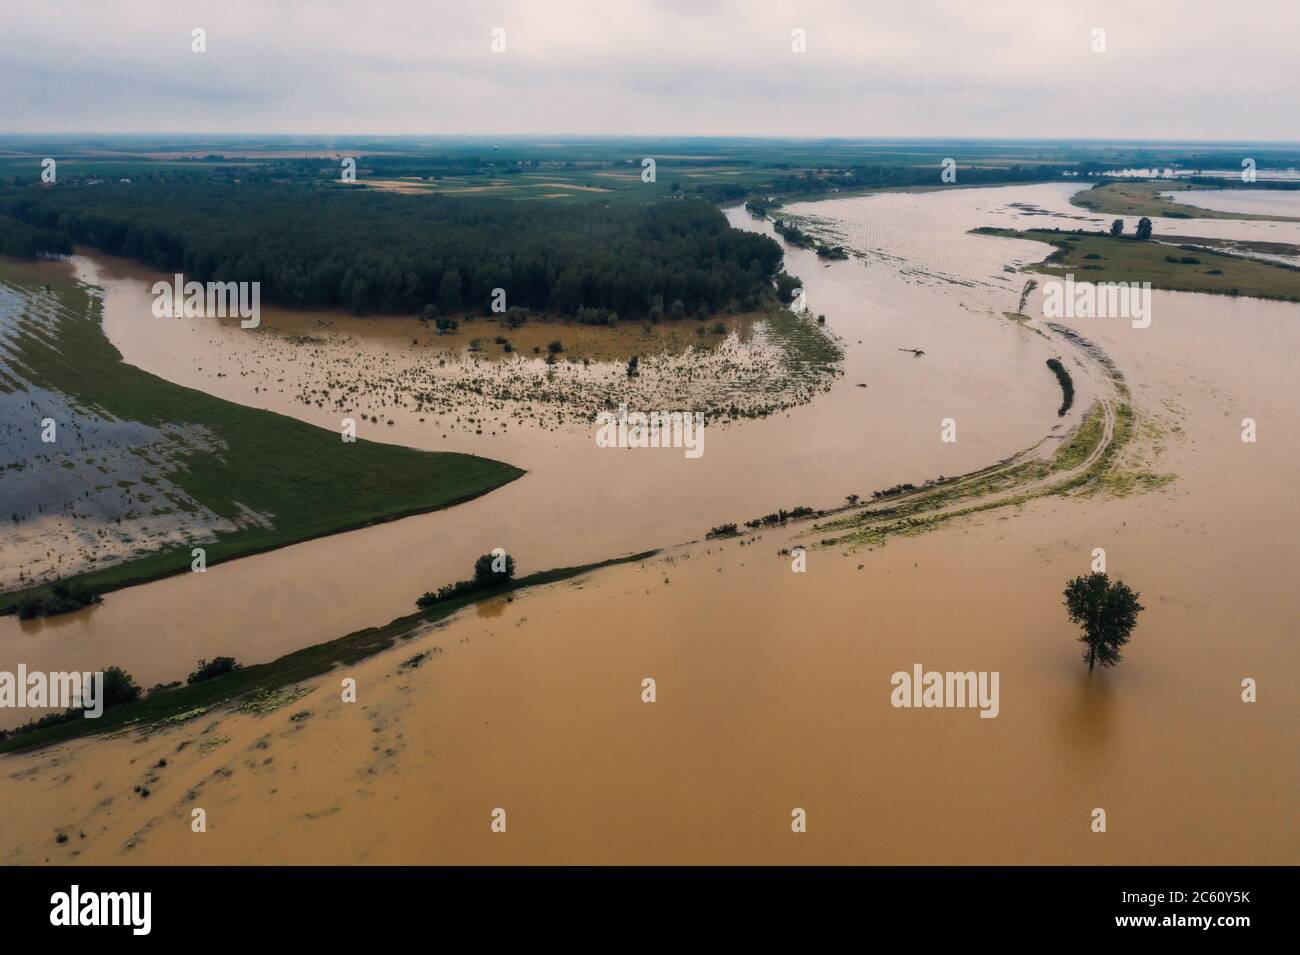 Paysage de campagne et rivière inondés de drone pov. Rivière Tamis dans la province de Voïvodine, Serbie. Banque D'Images